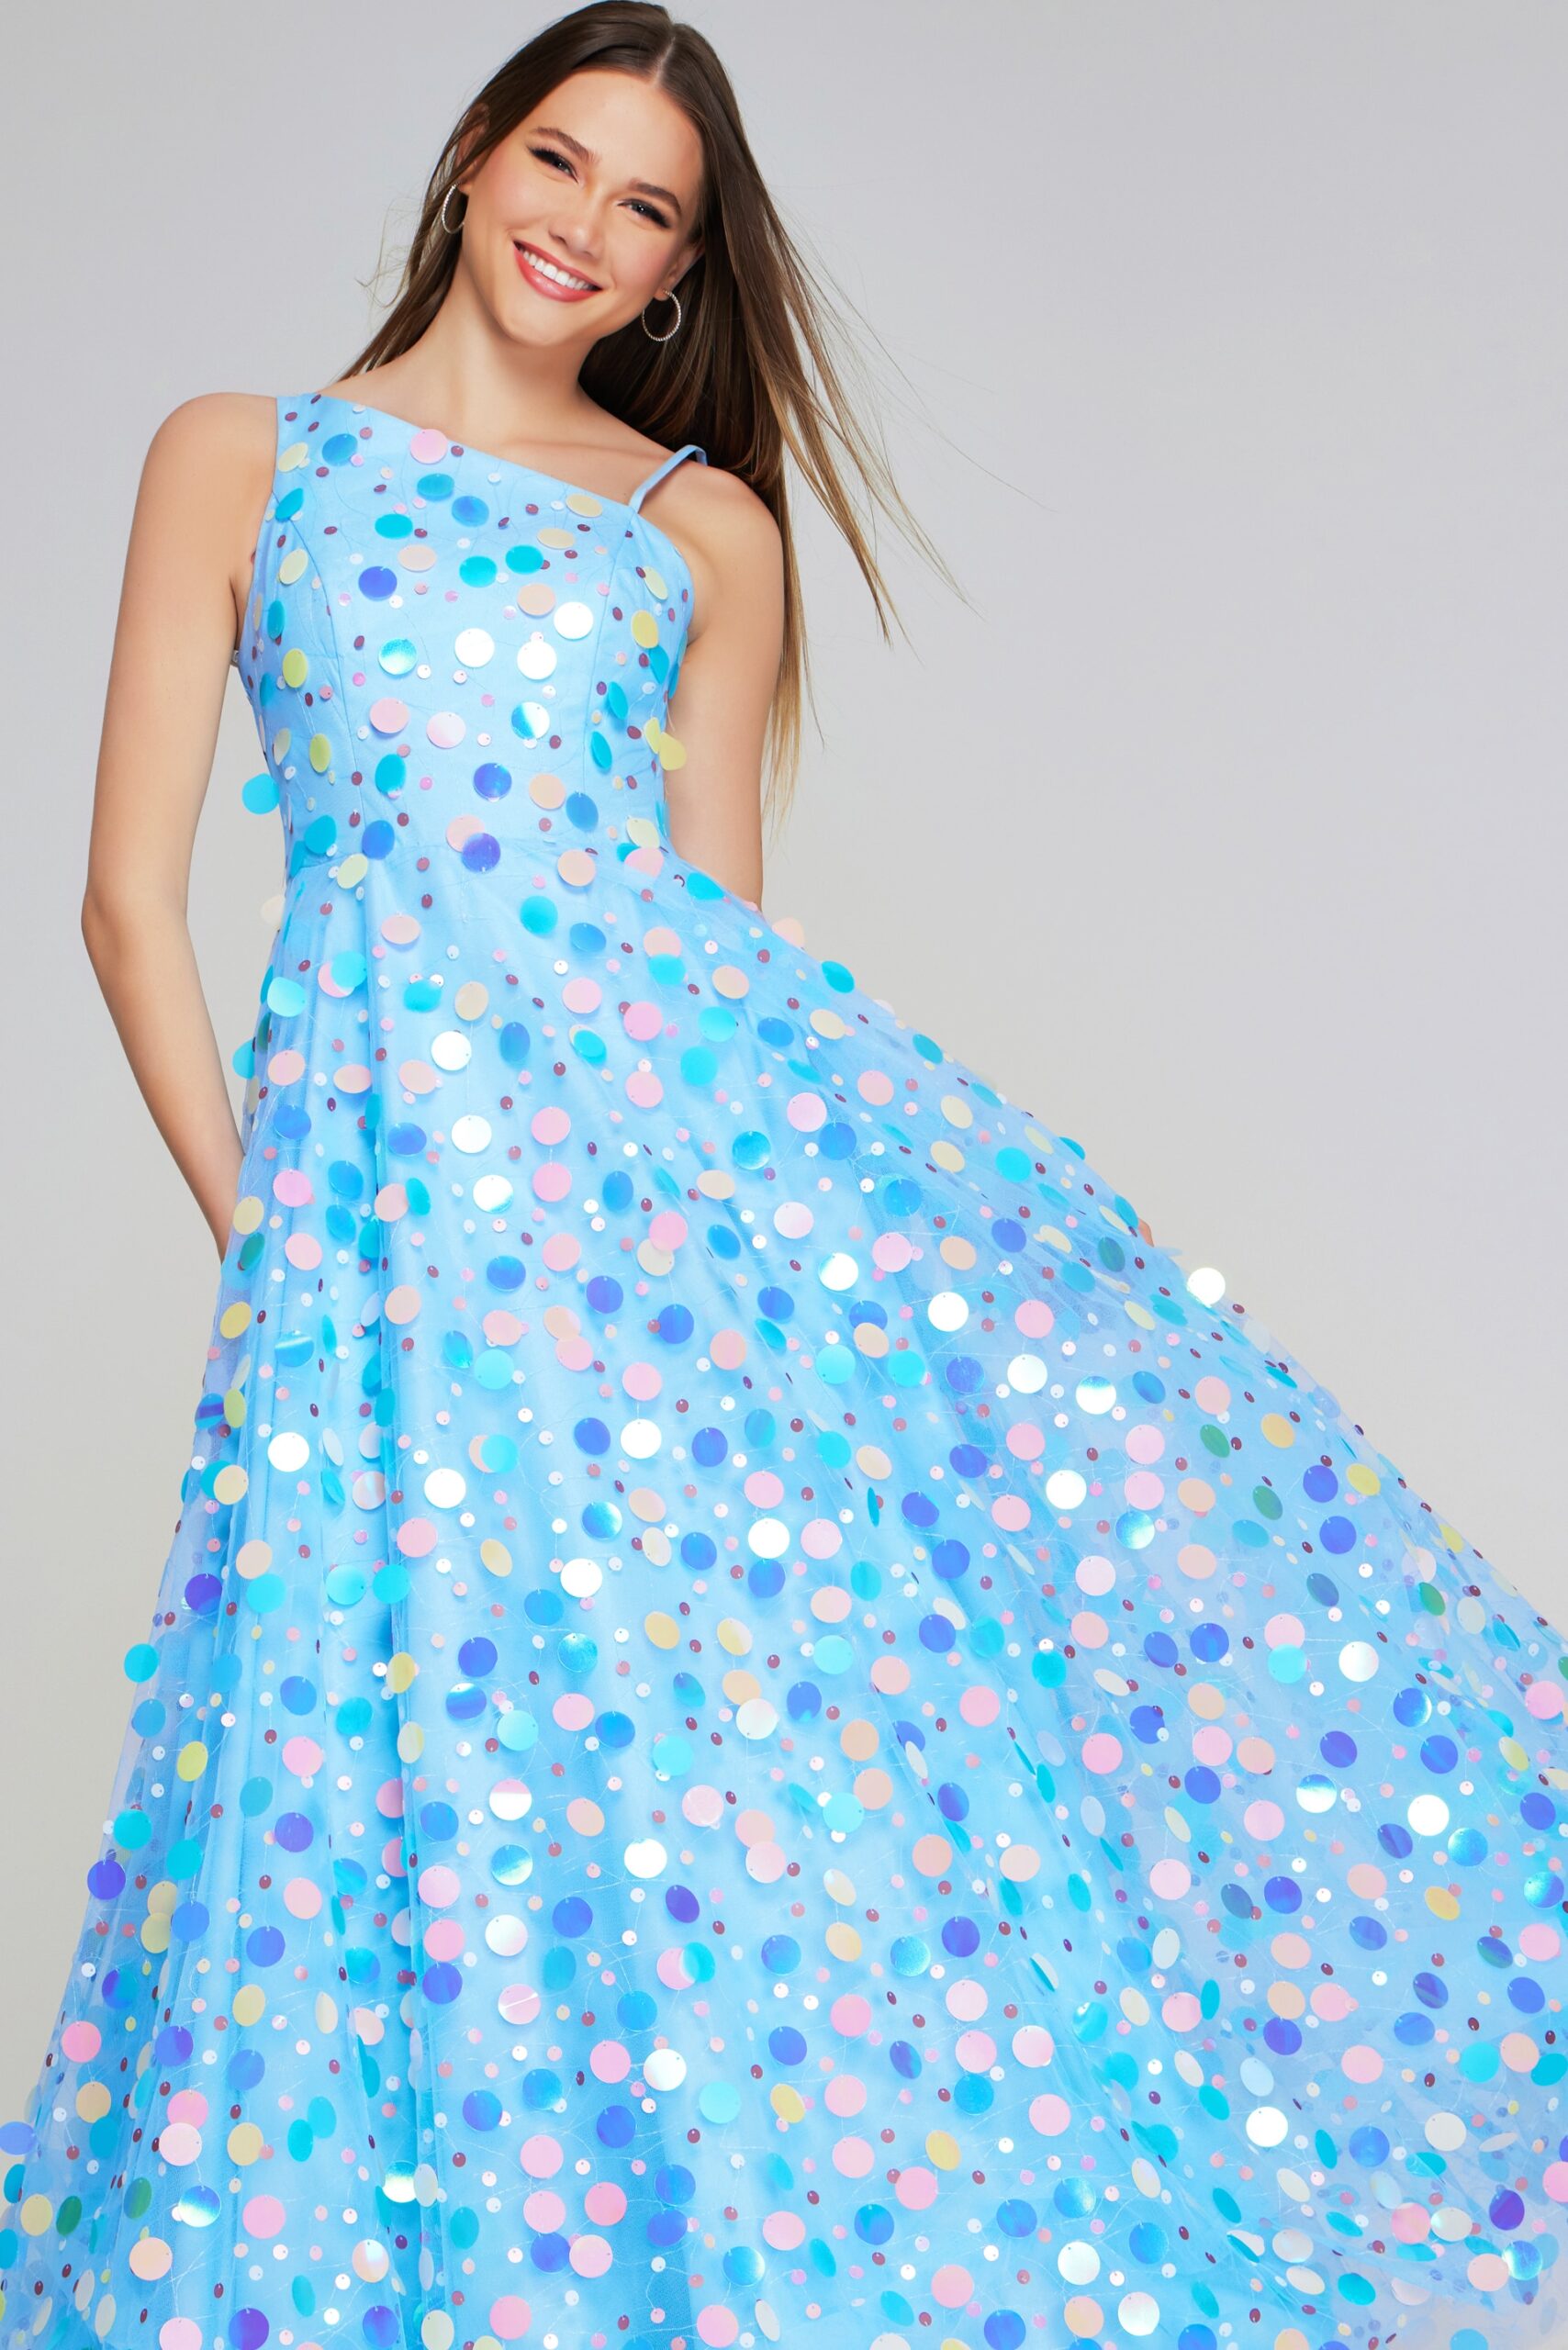 Model wearing Light Blue Polka Dot Tulle Gown K23877